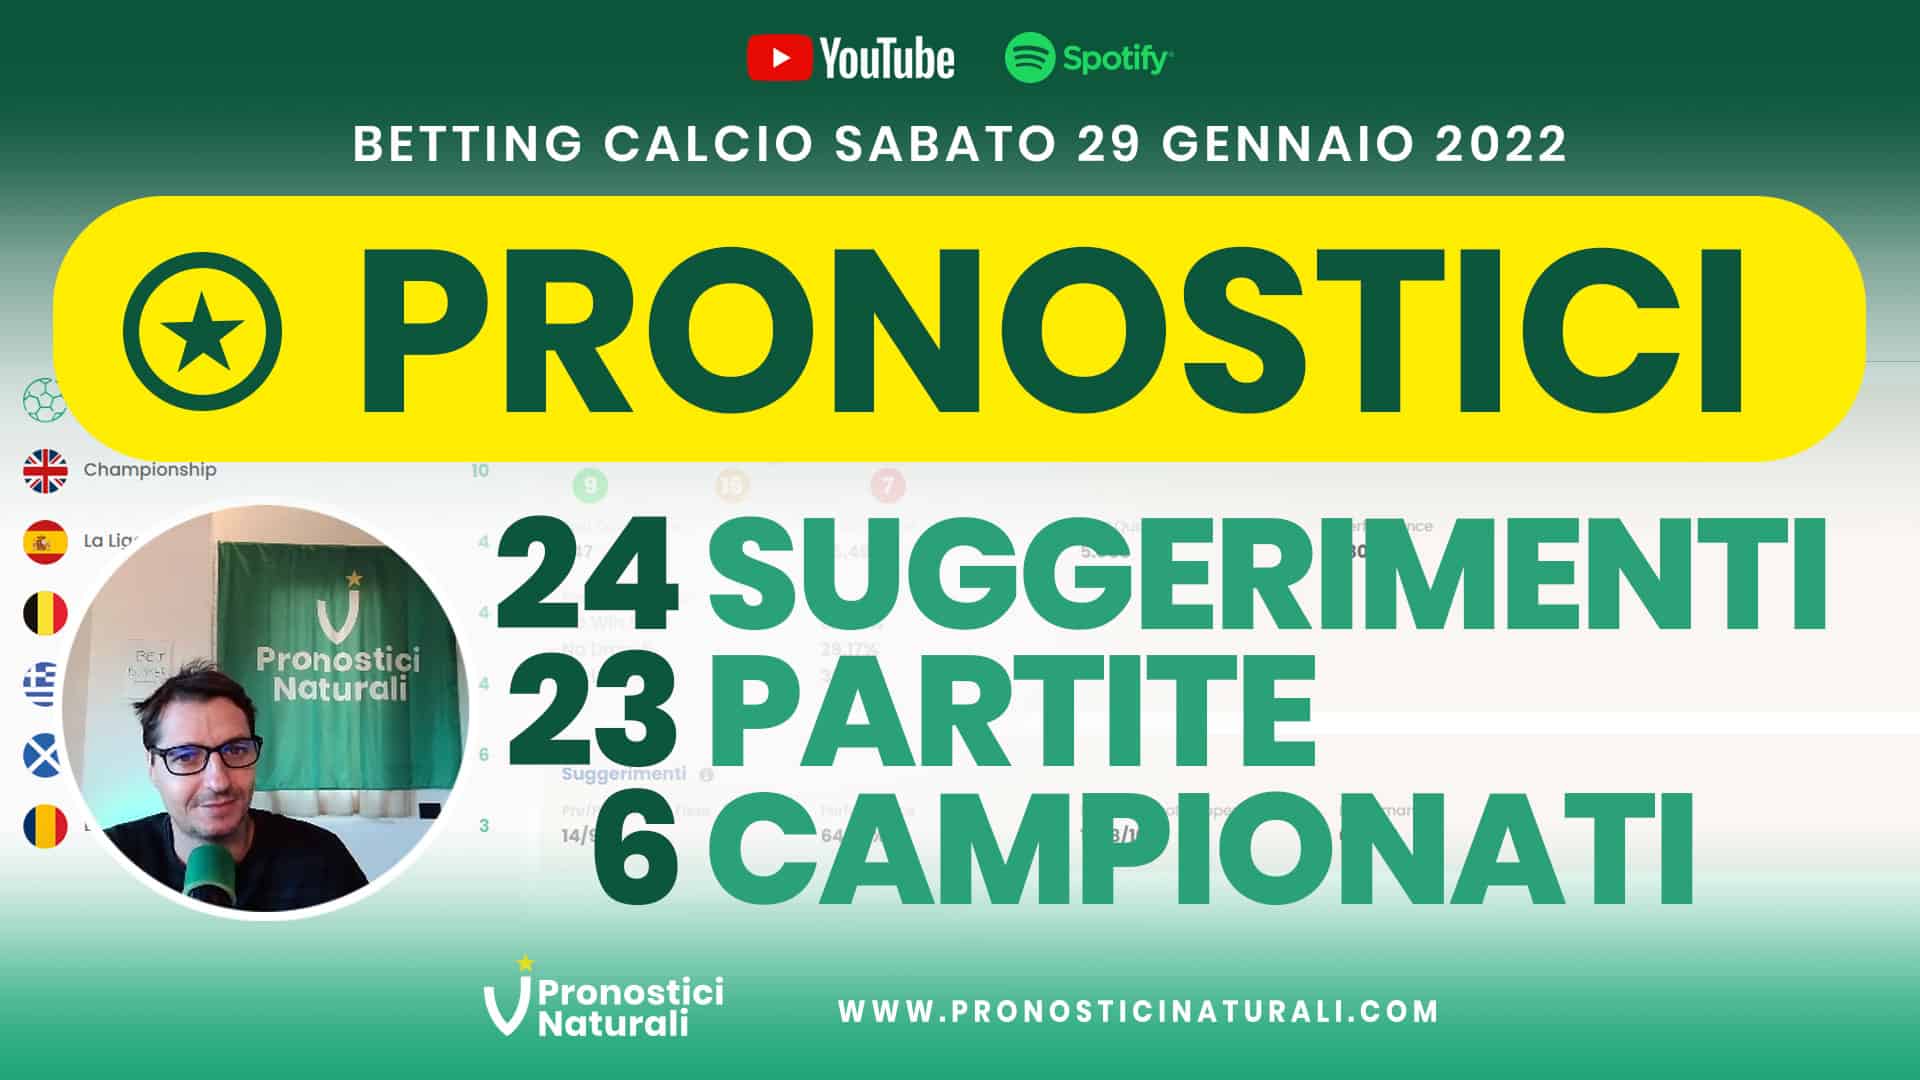 Pronostici Naturali Video Analisi Scommesse Betting Calcio Analisi Pre Partite Sabato 29 Gennaio 2022